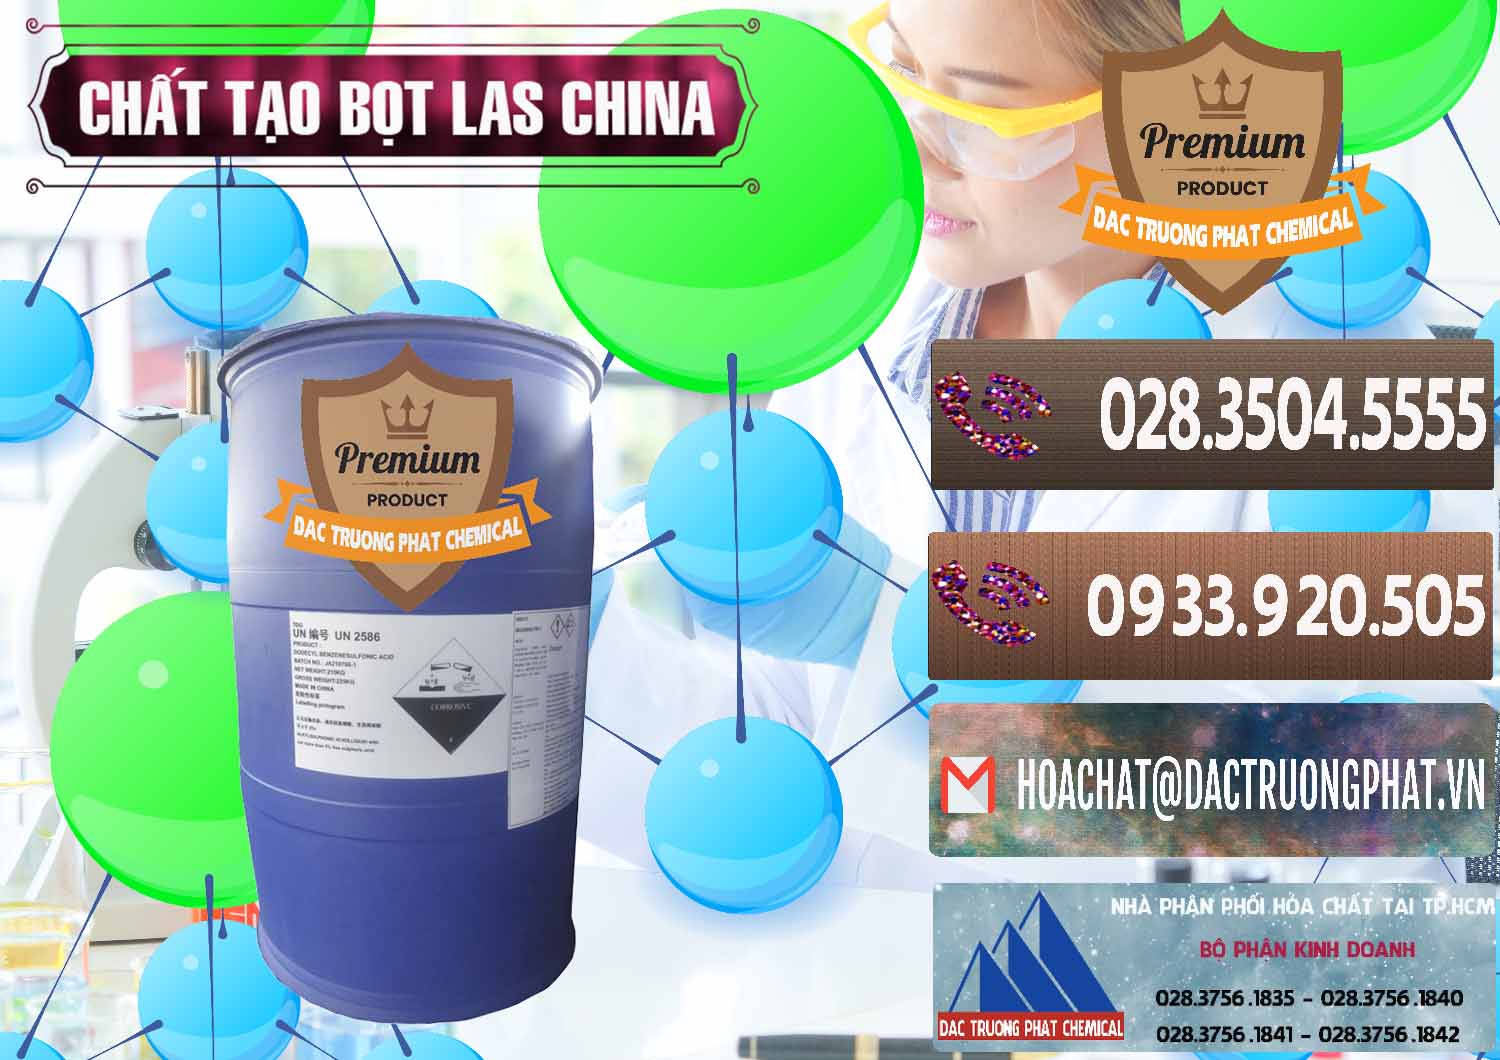 Cty chuyên kinh doanh _ bán Chất tạo bọt Las Trung Quốc China - 0451 - Công ty kinh doanh và phân phối hóa chất tại TP.HCM - hoachatviet.net